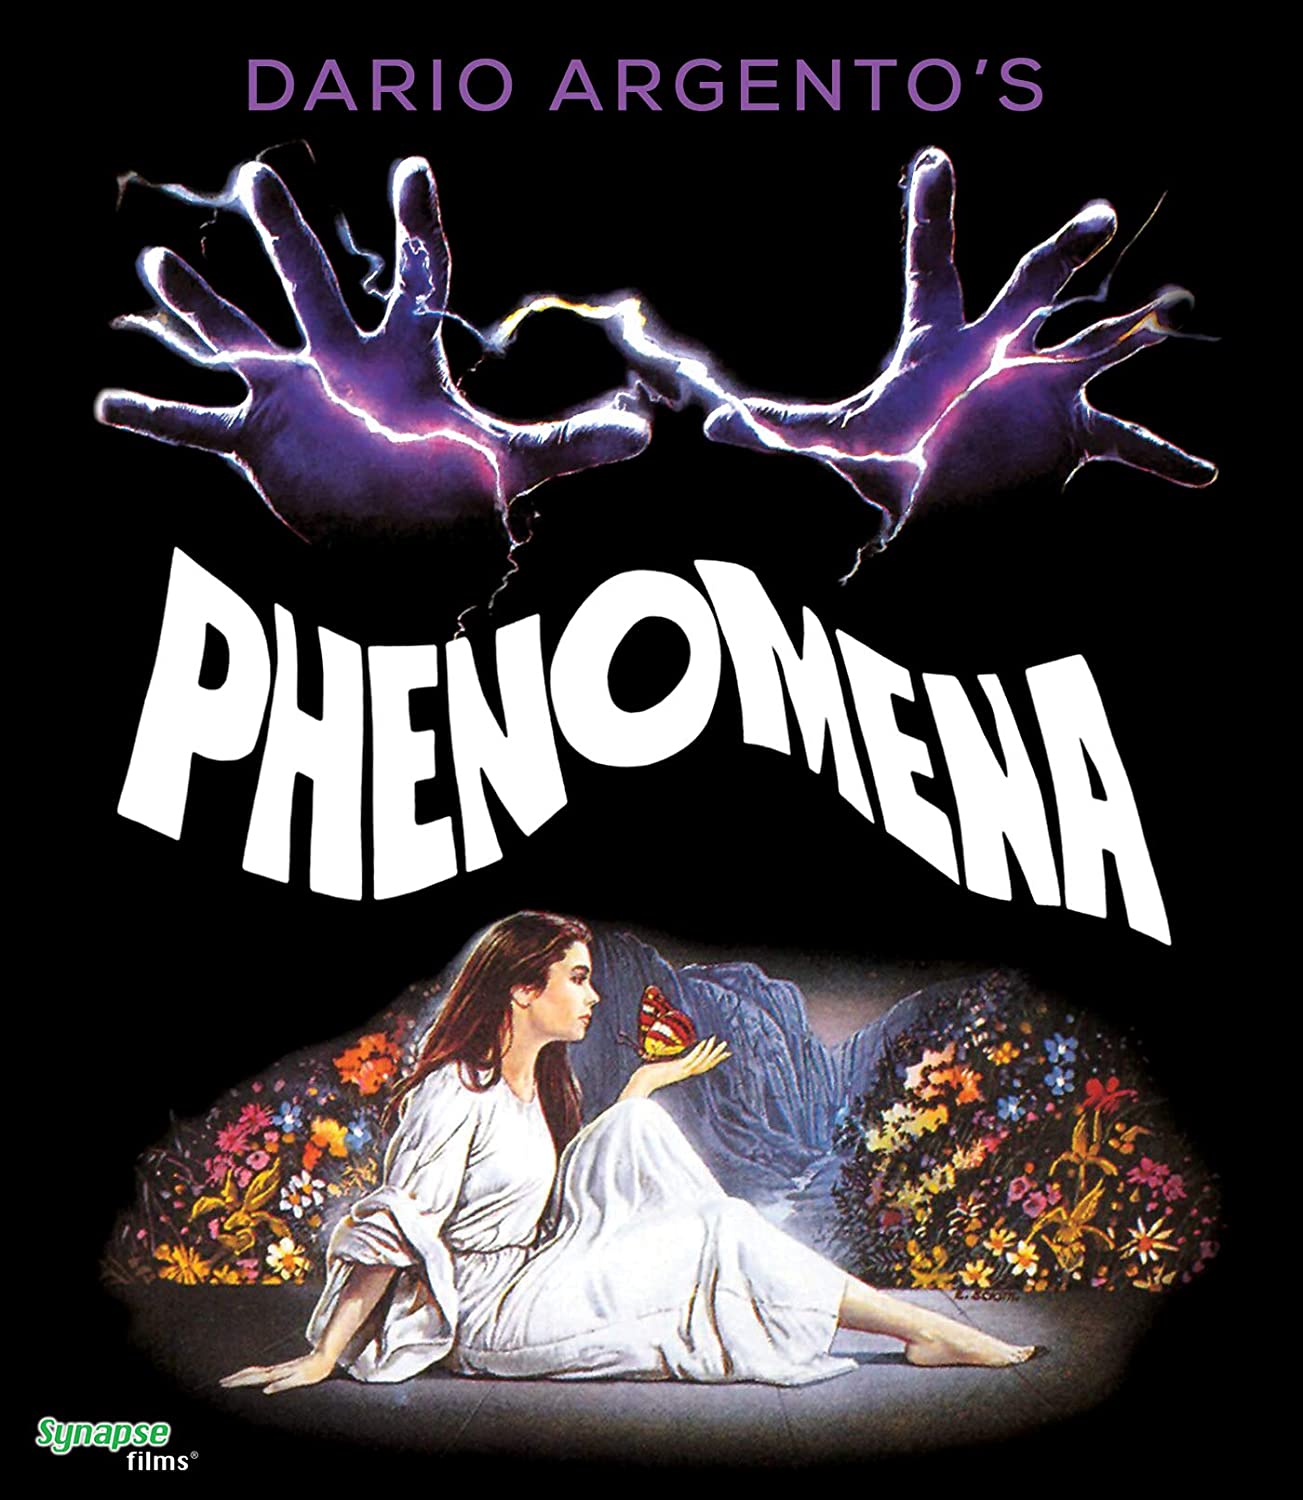 Phenomena (1985) : Another of Dario Argento’s classics.